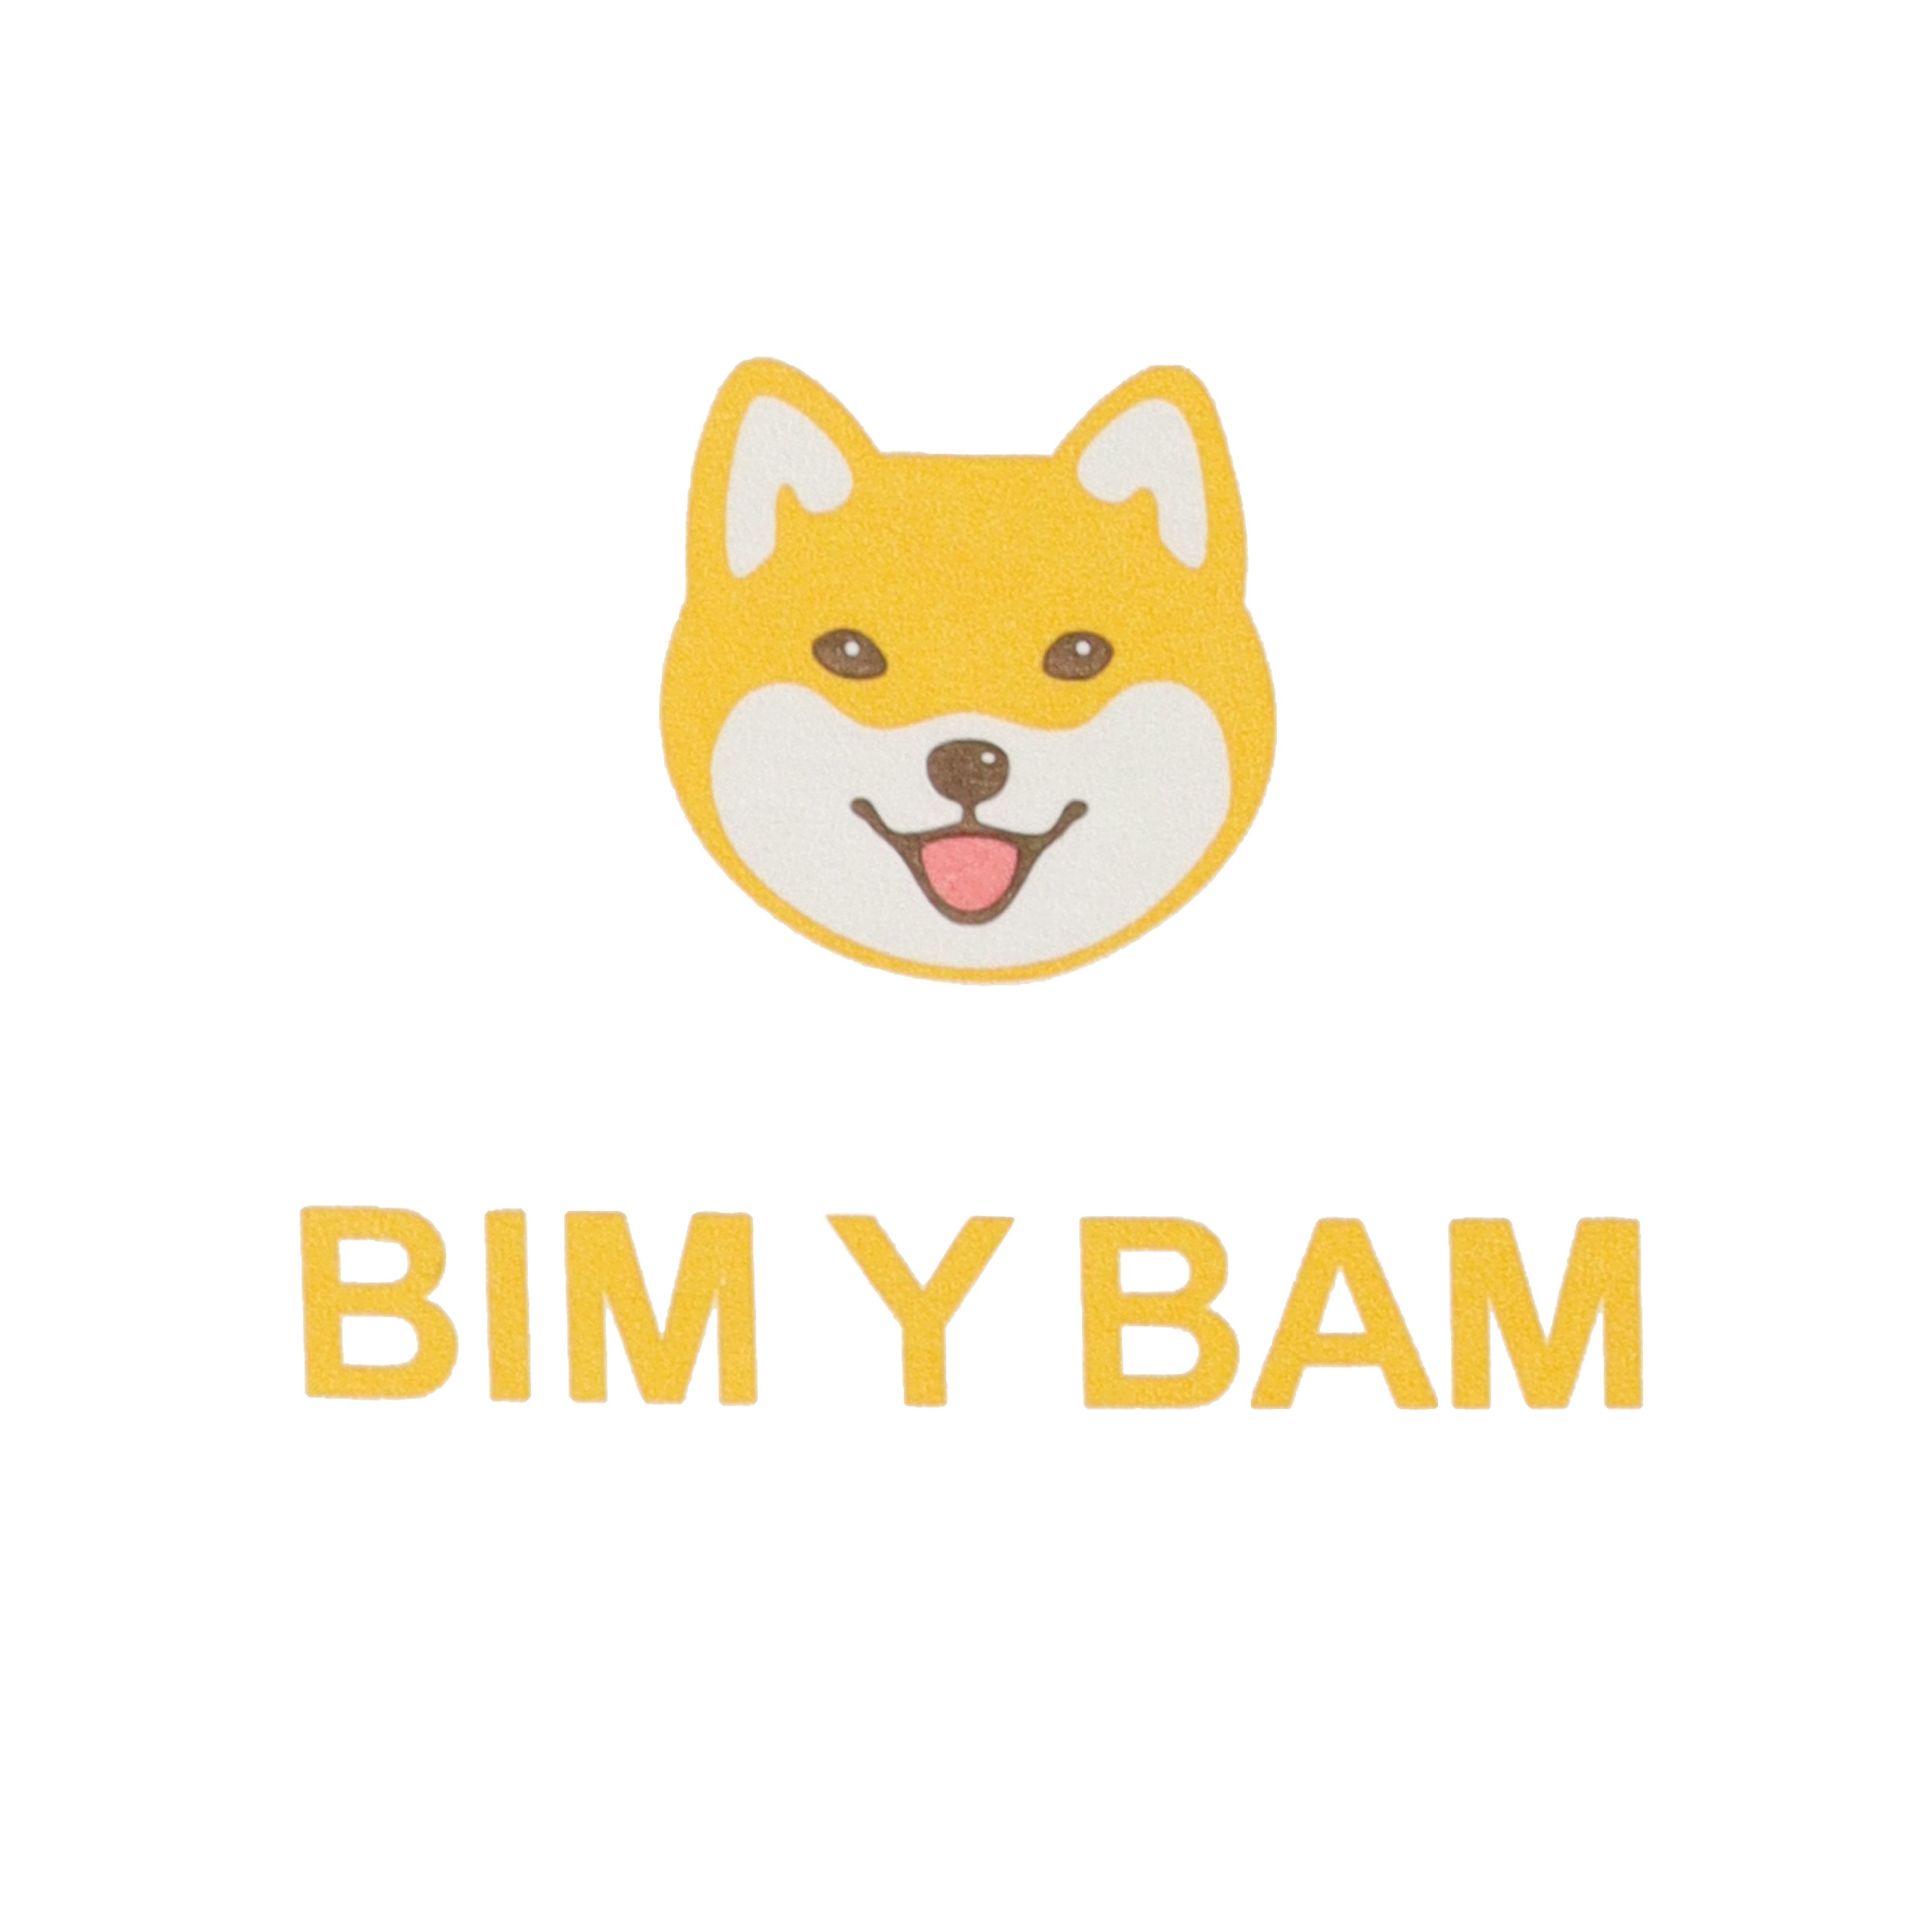 BIM Y BAM